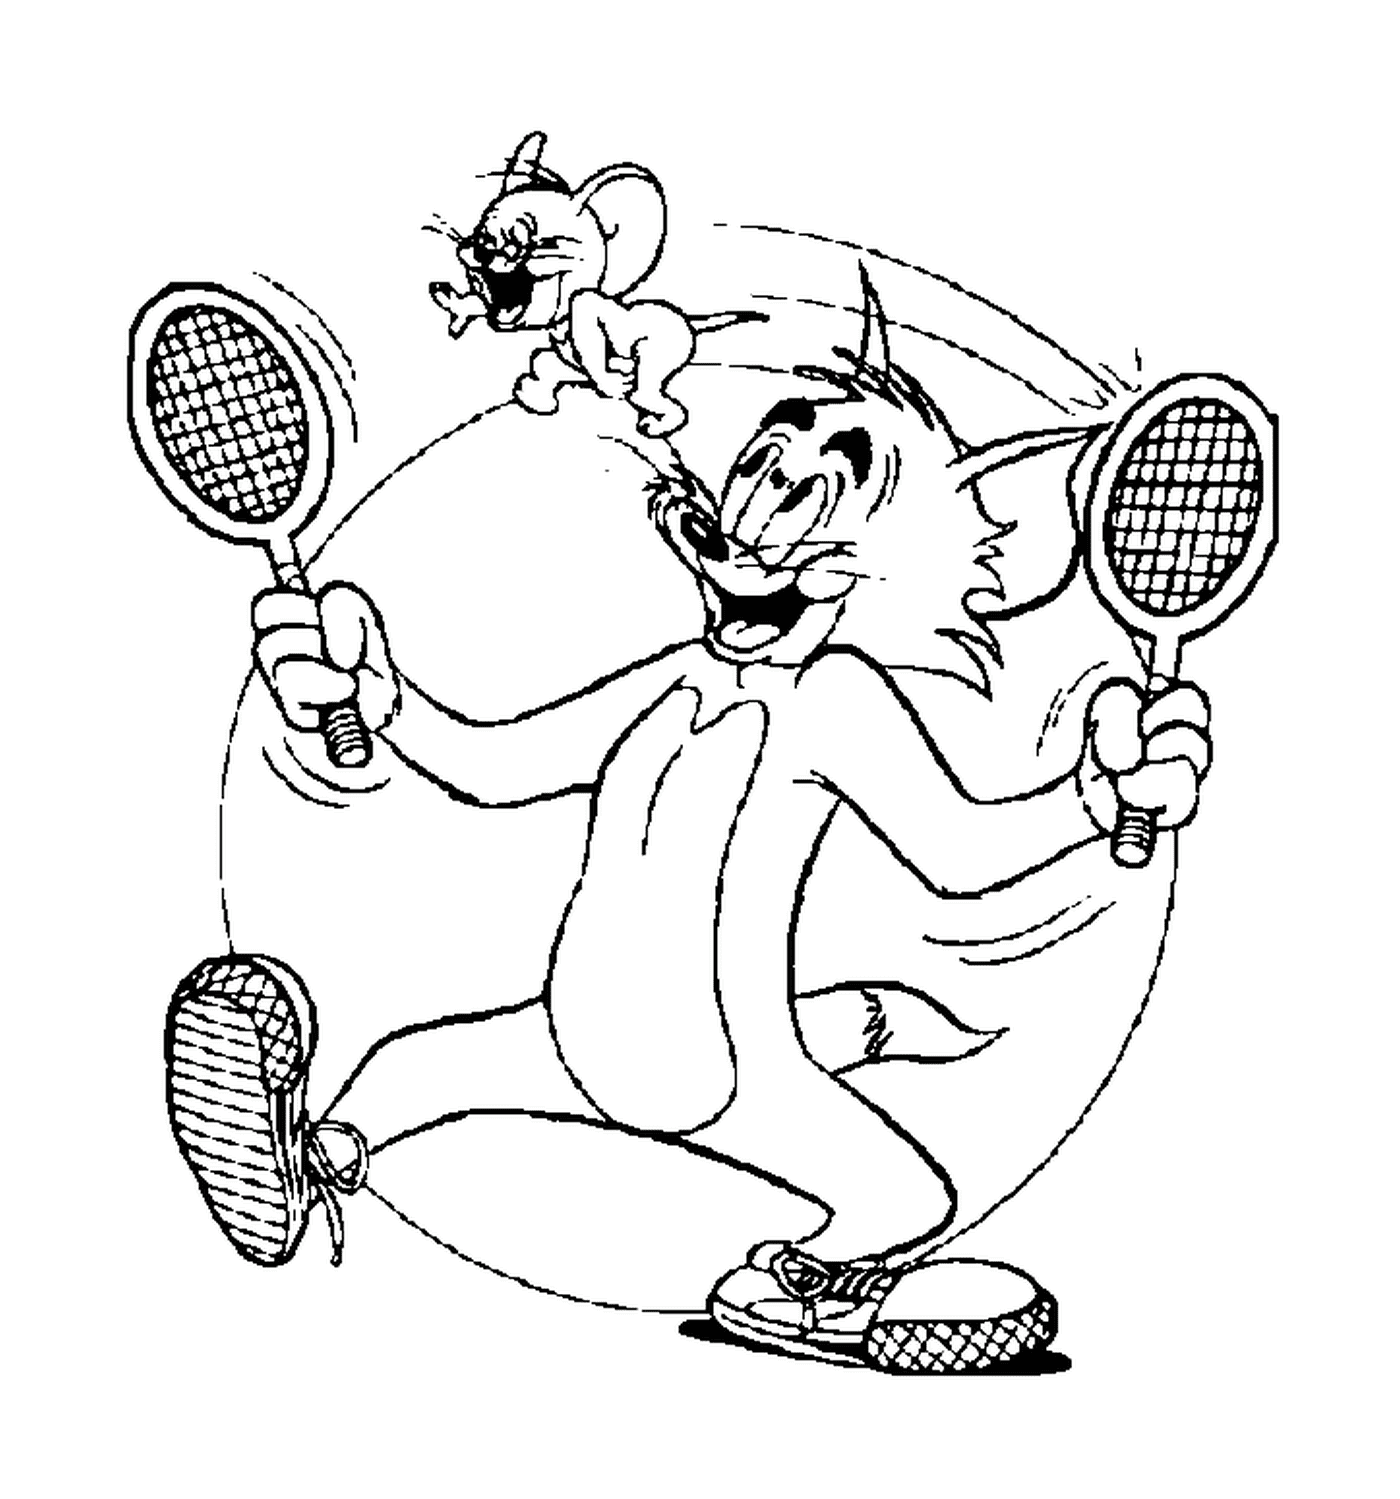  Том и Джерри играют в теннис 